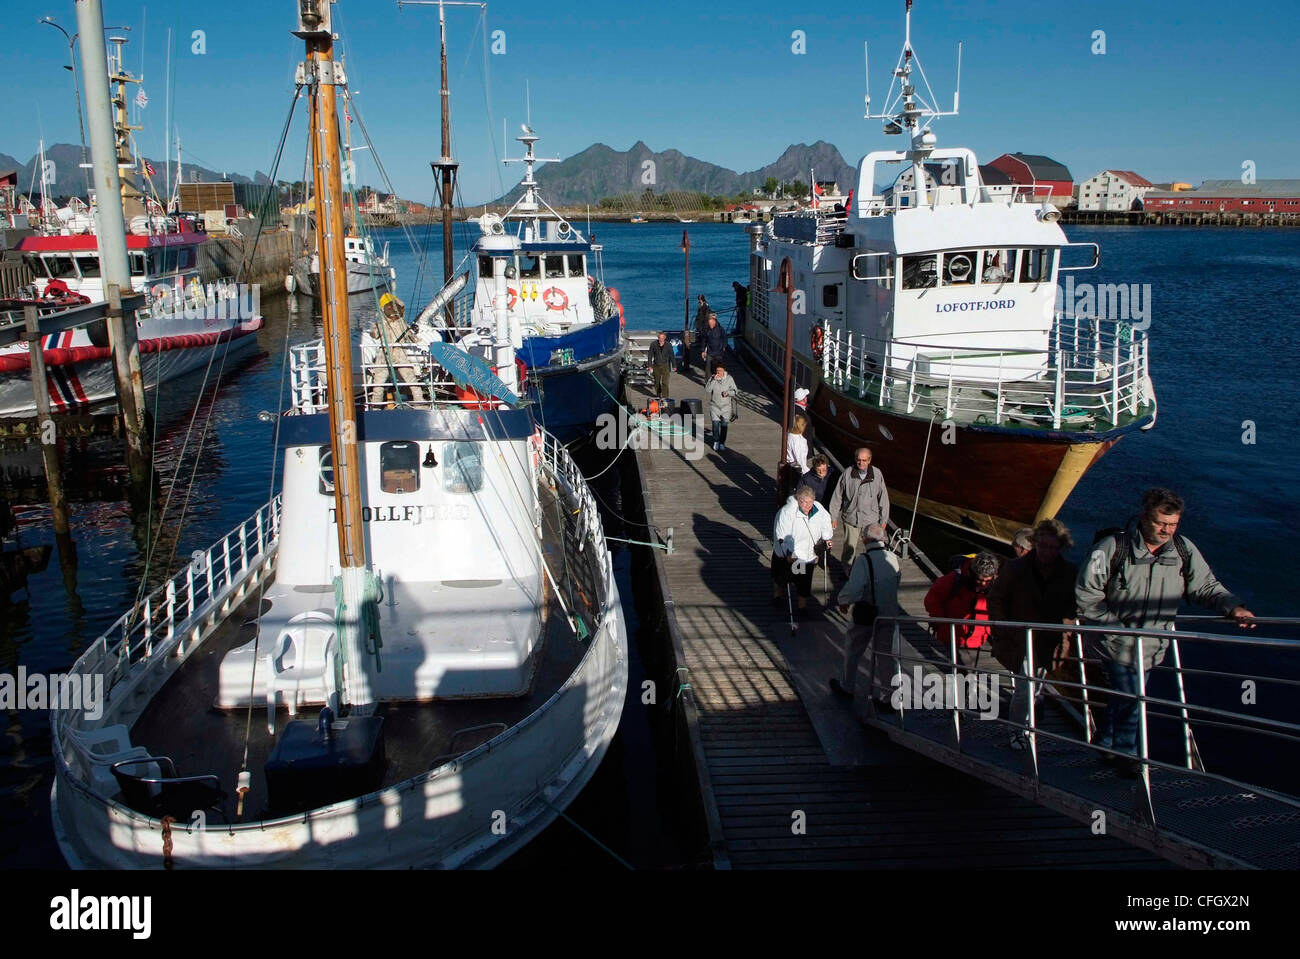 Norwegen-LOFOTEN-Inseln Svolvaer - Hauptstadt der Insel-Gruppe - die kommerziellen Hafen - Fähre Passagiere bei der Landung Stockfoto